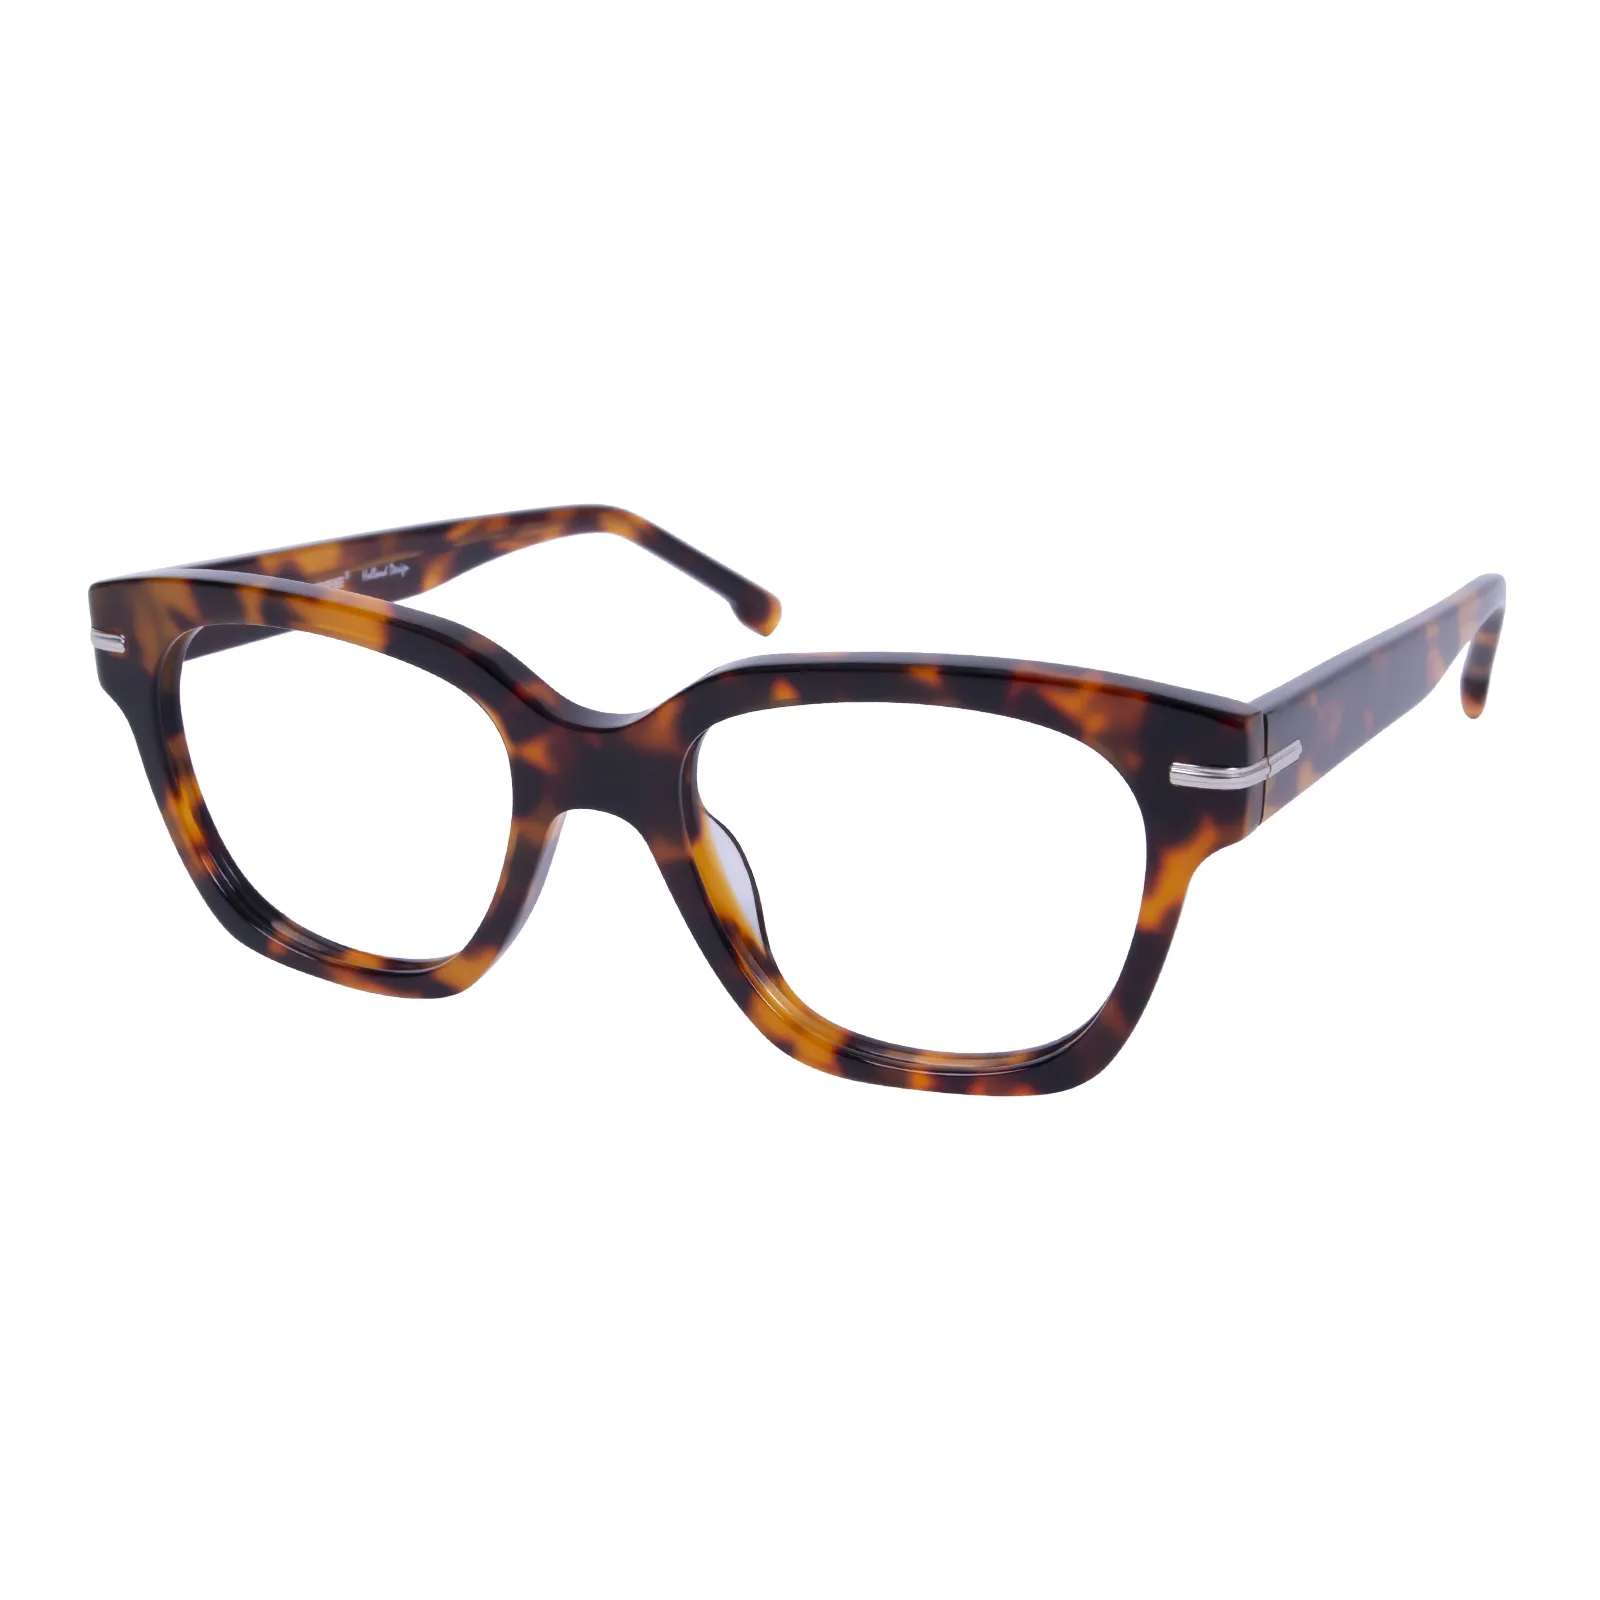 Phyllis - Square Tortoisehell Glasses for Women